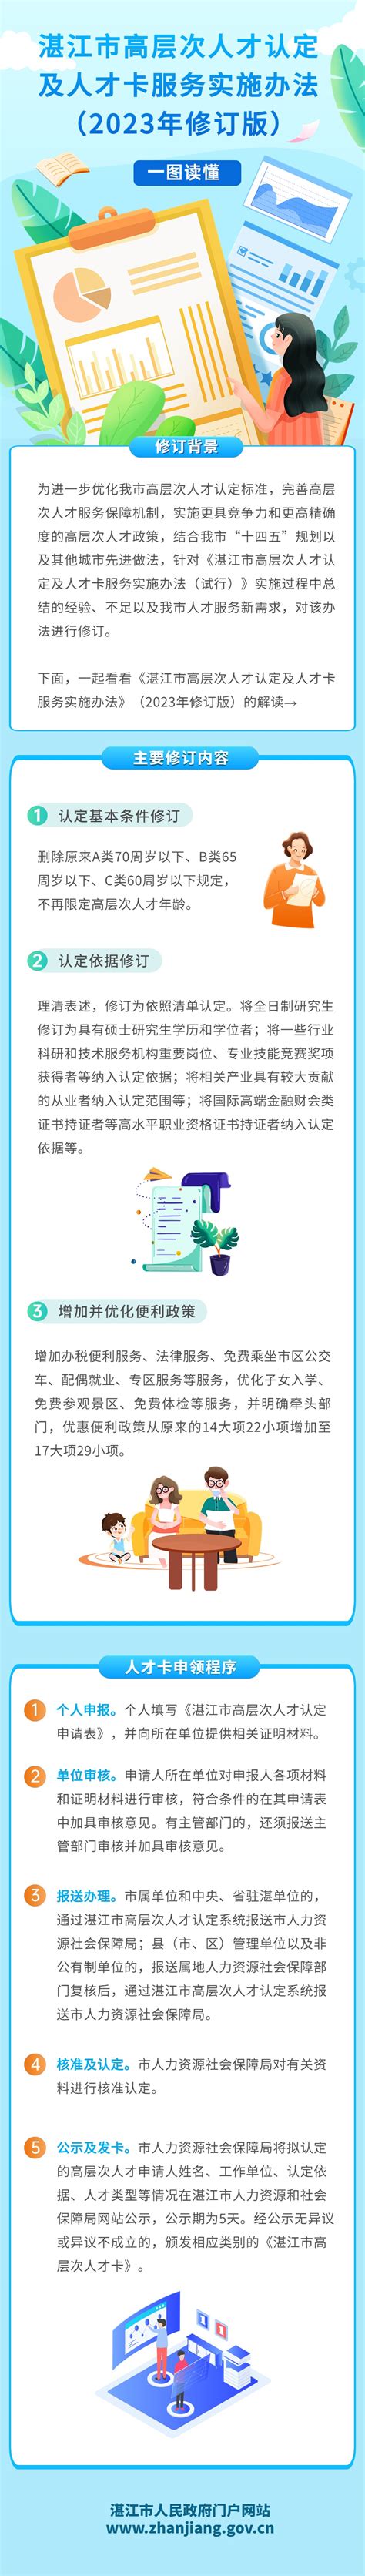 湛江市政府门户网站全新改版上线_首页要闻_南方网